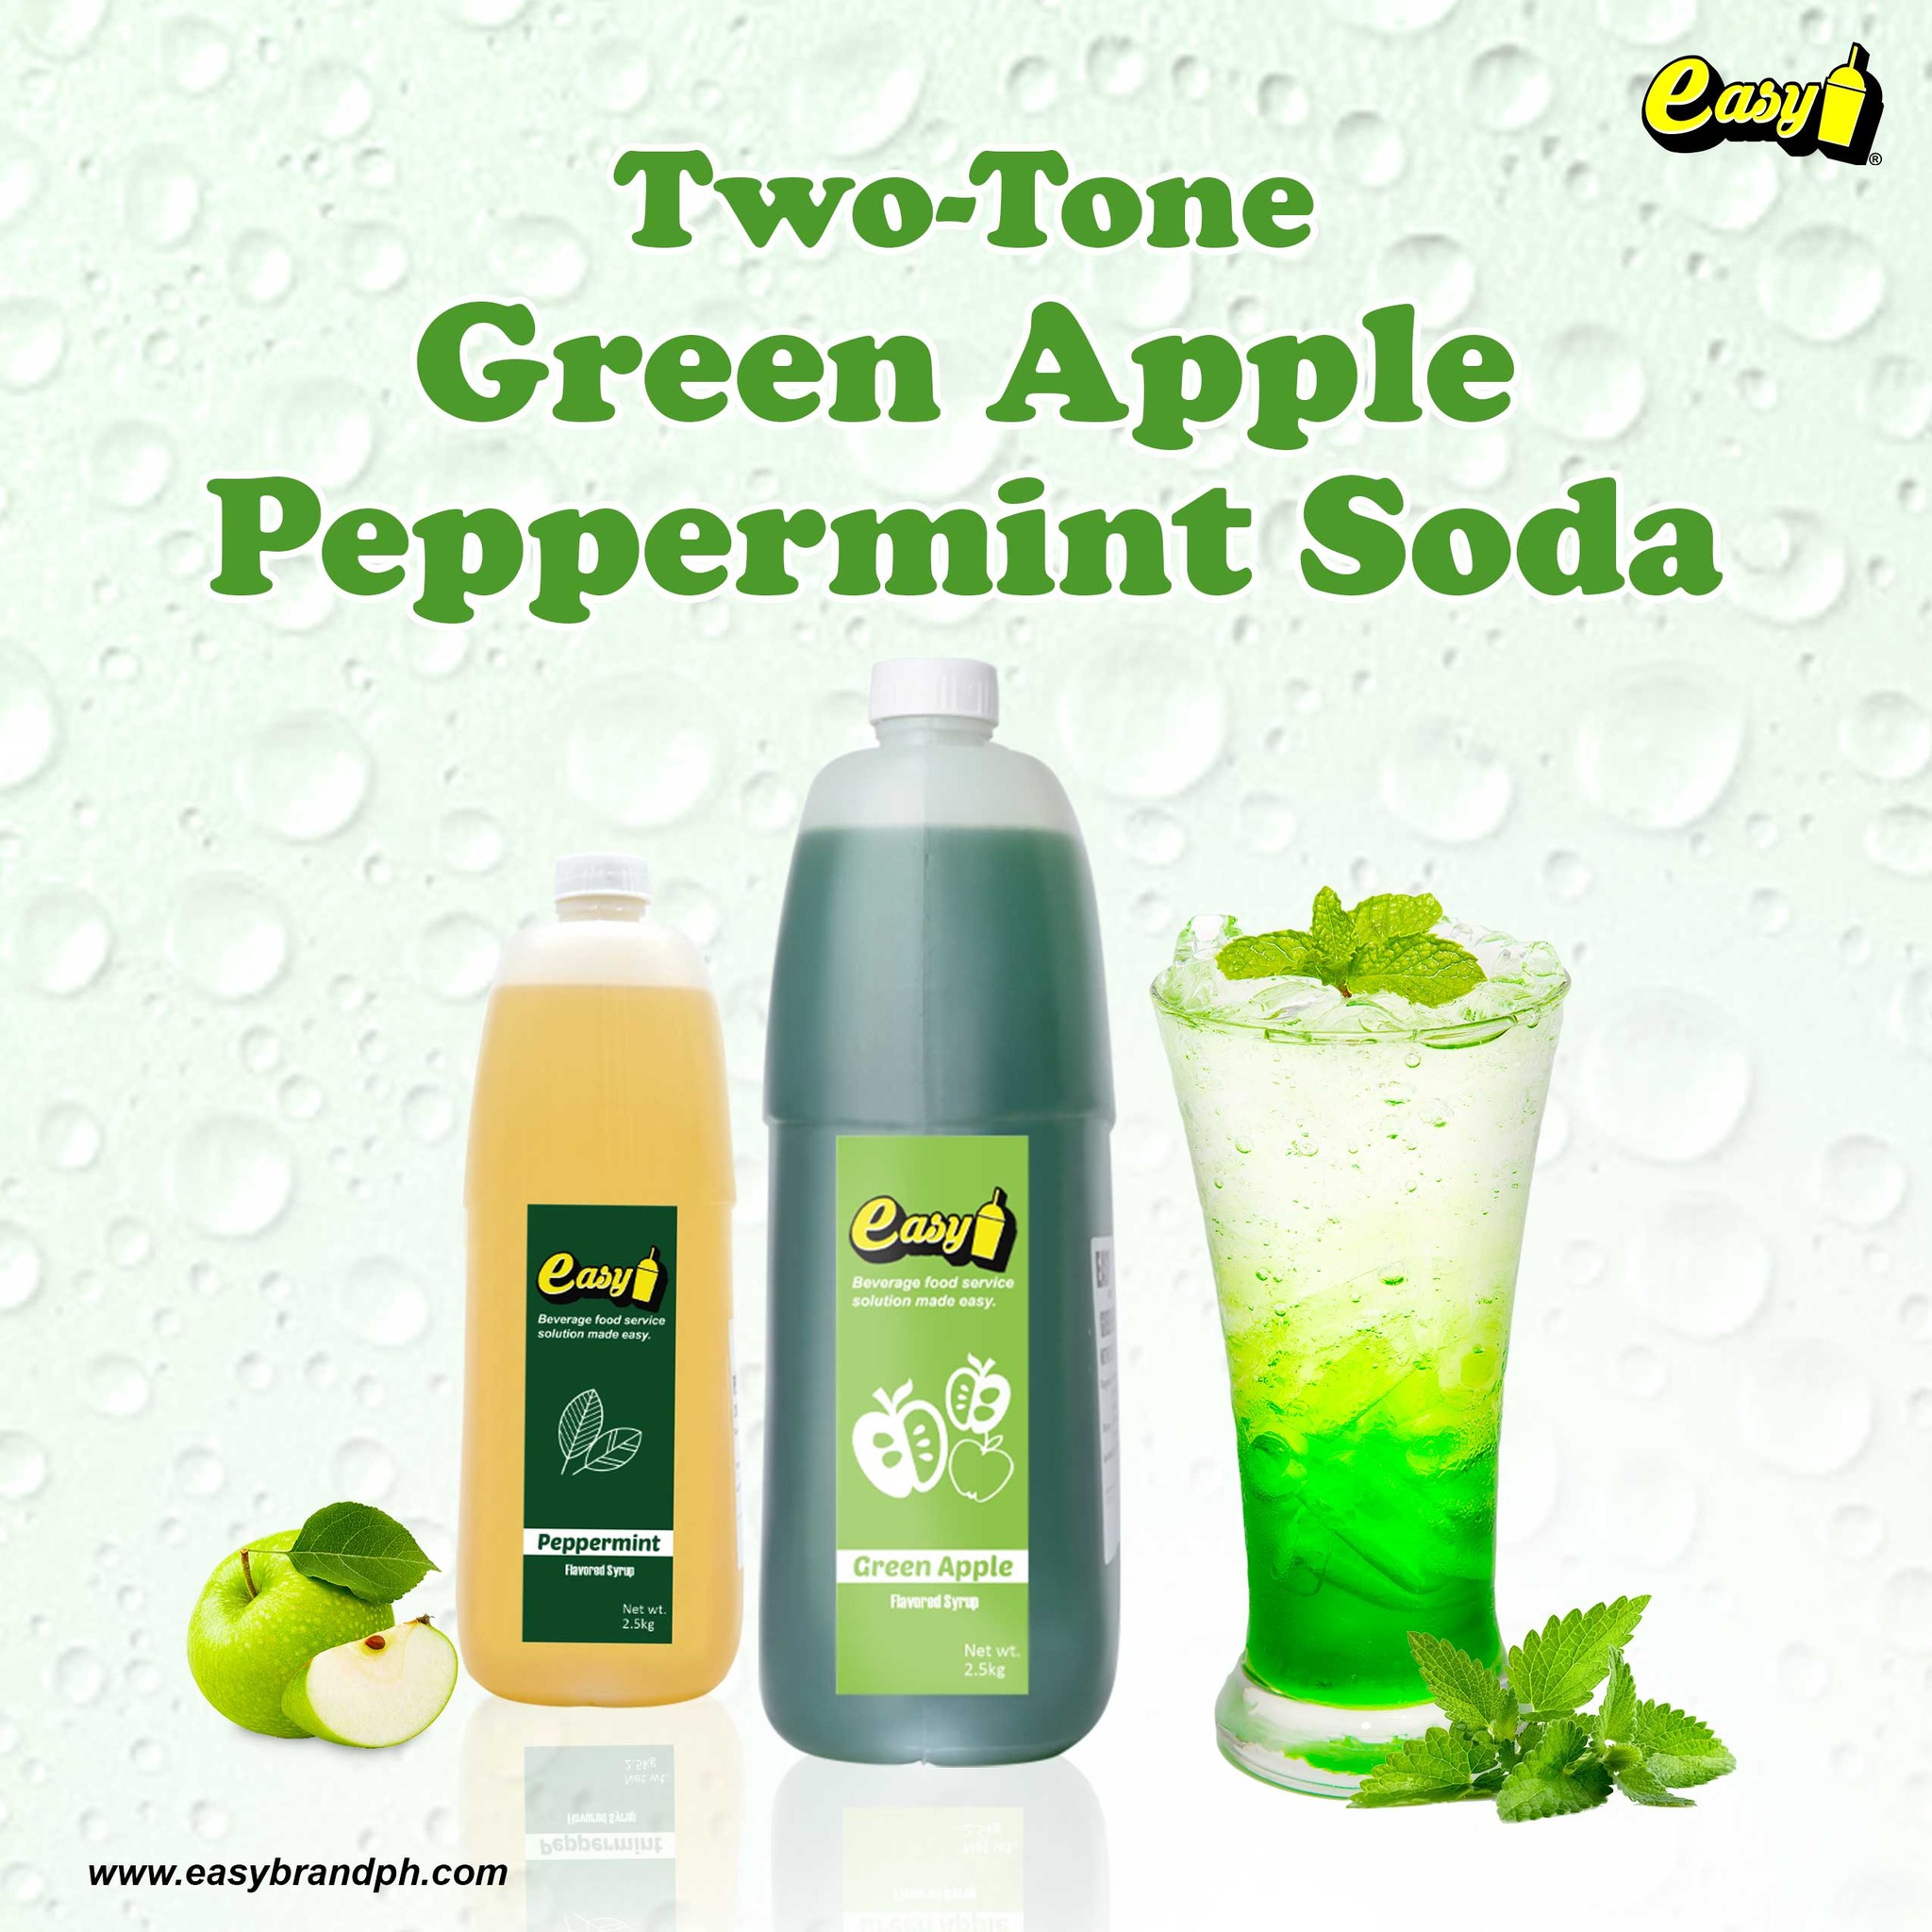 Two-tone Green Apple Peppermint Soda